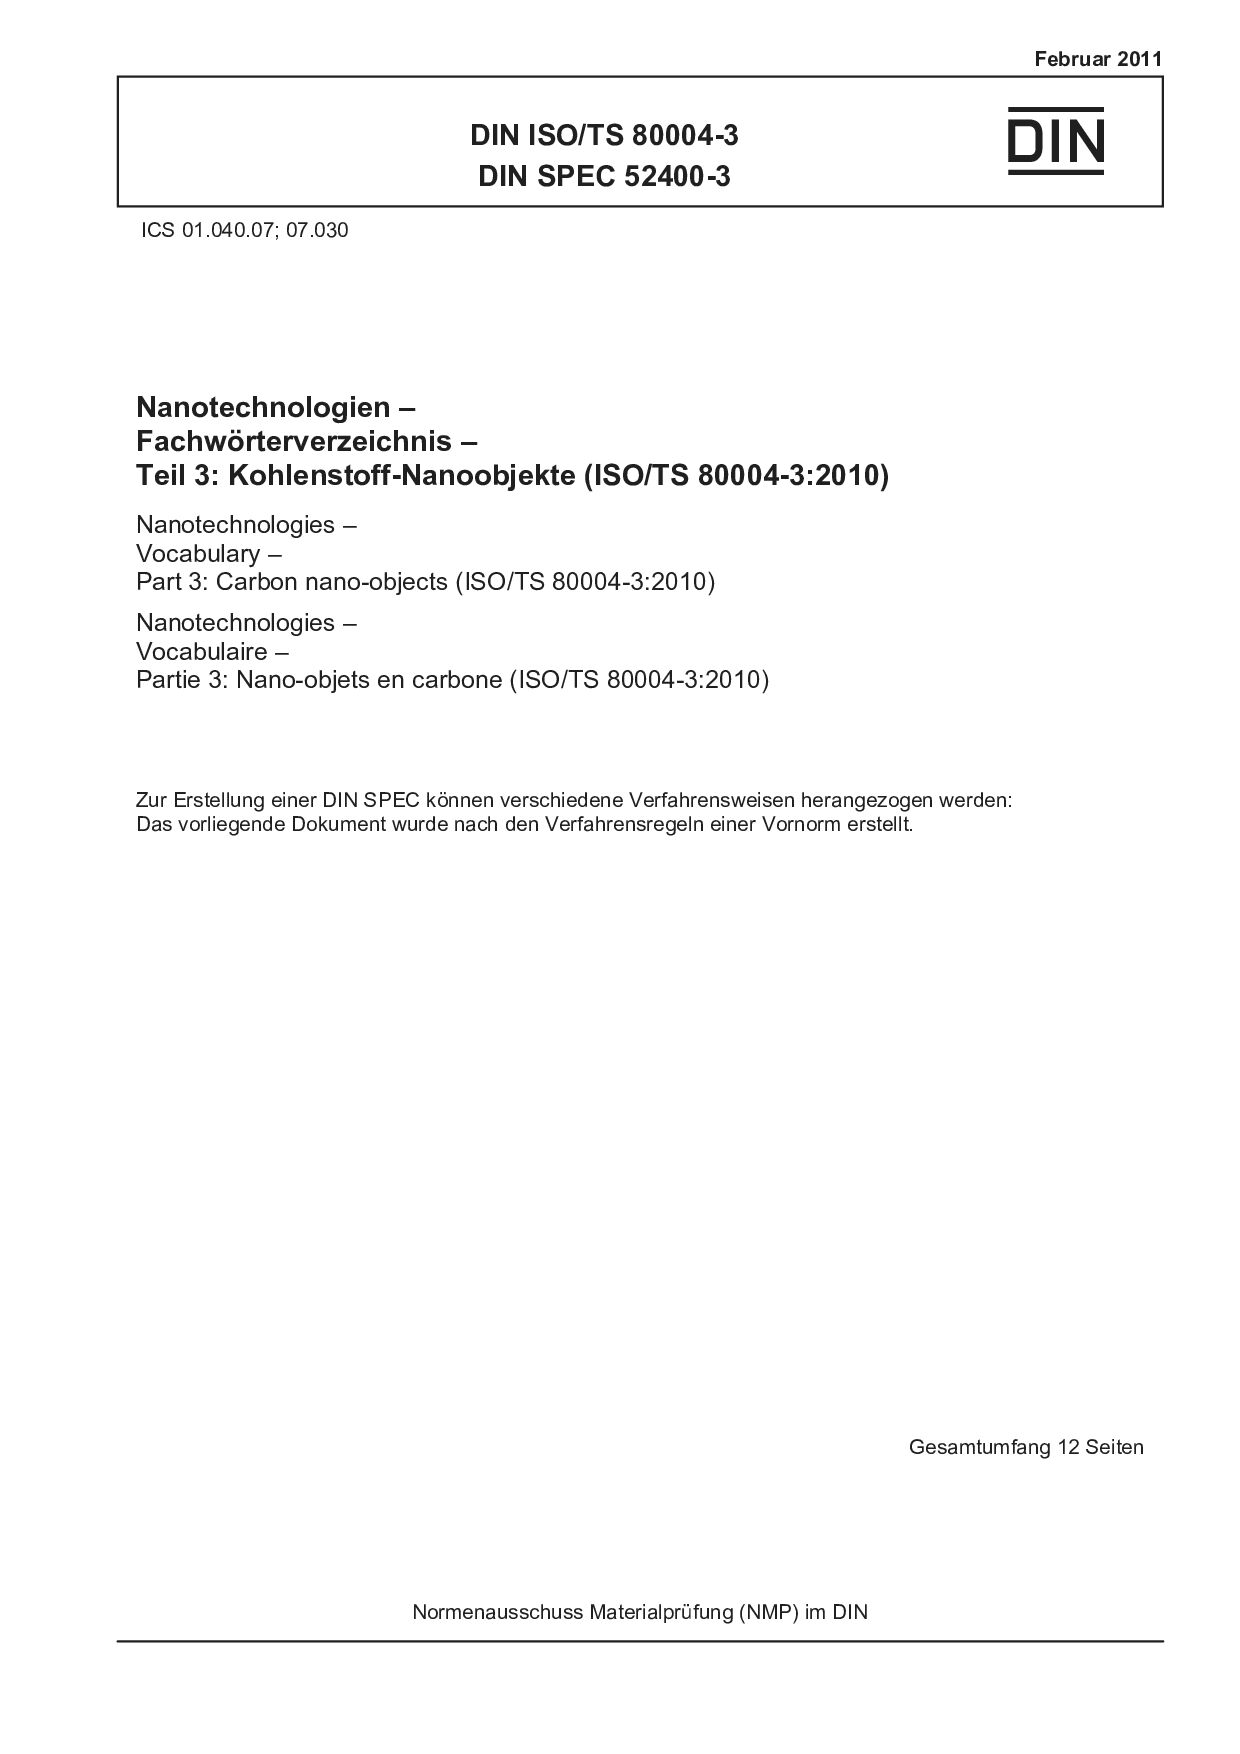 DIN ISO/TS 80004-3:2011封面图